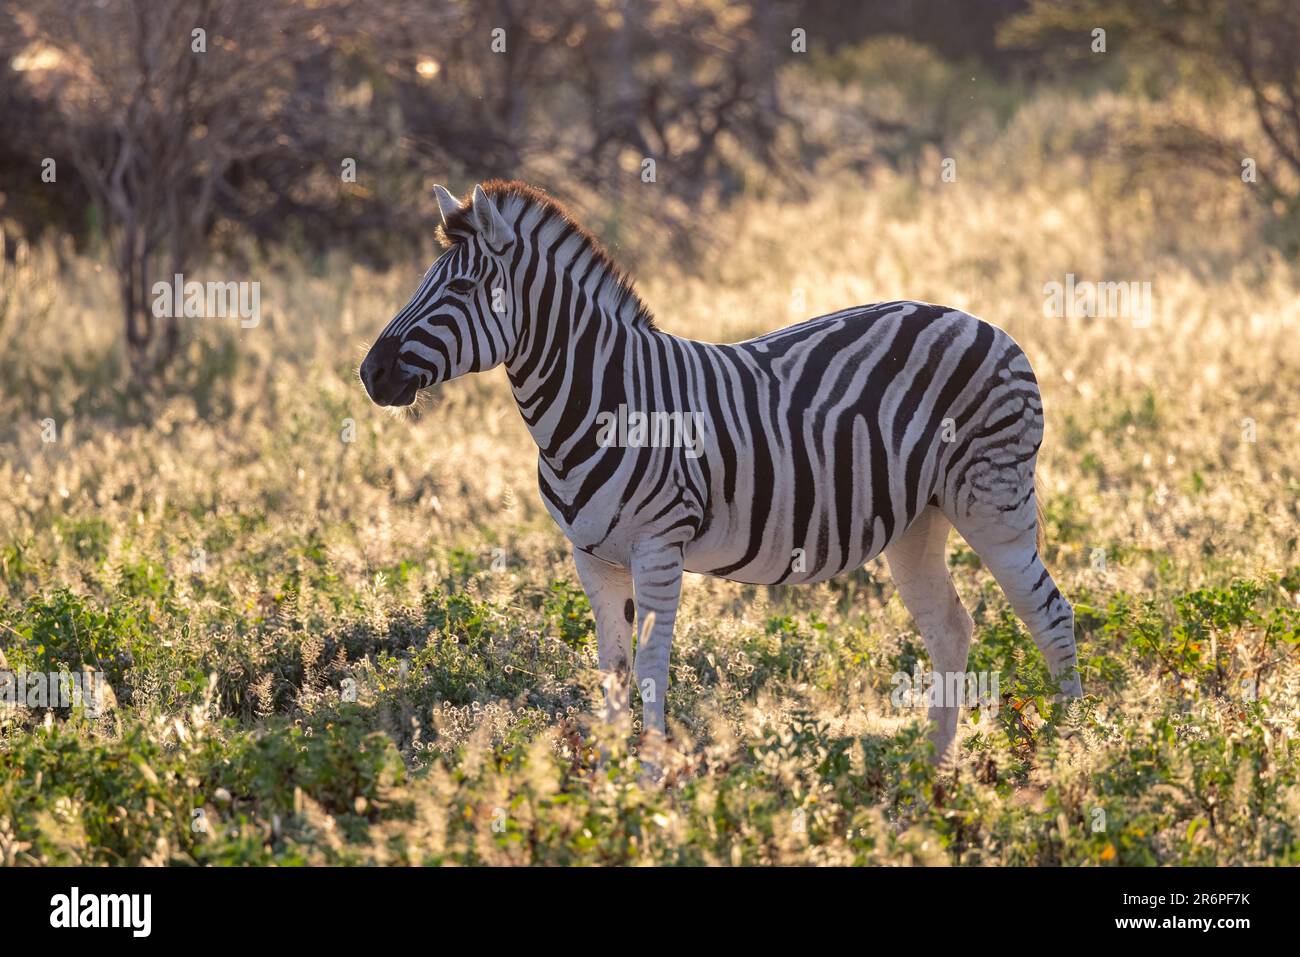 Zèbre de plaines rétro-éclairé (Equus quagga, anciennement Equus burchellii) en lumière précoce - Onguma Game Reserve, Namibie, Afrique Banque D'Images